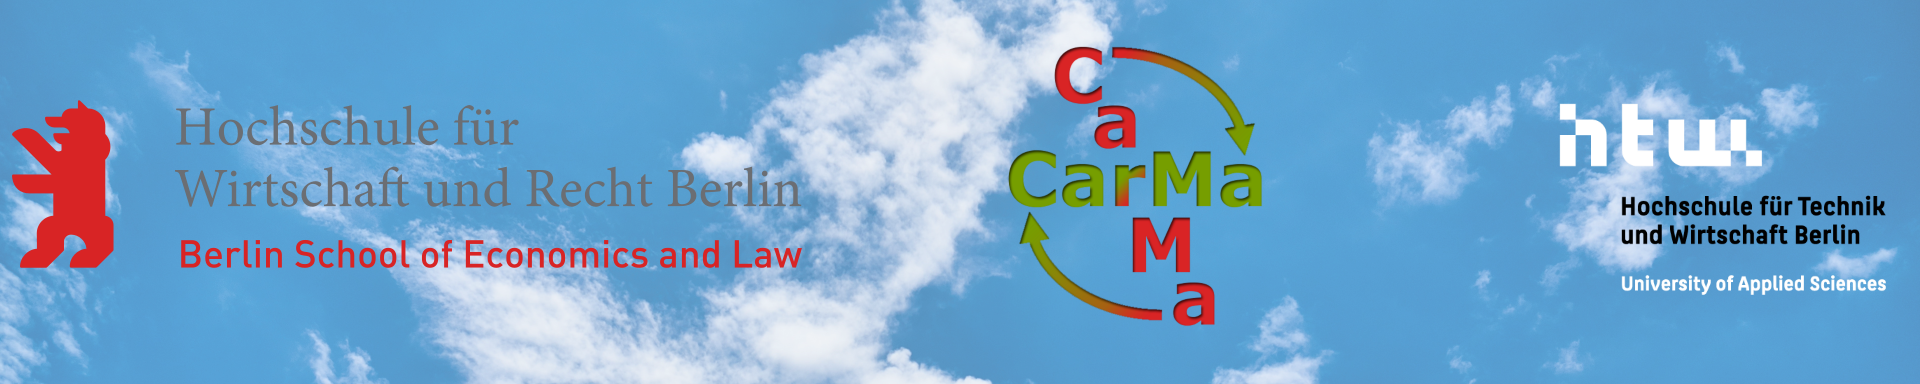 CarMa – Carbon Management für Facility Services